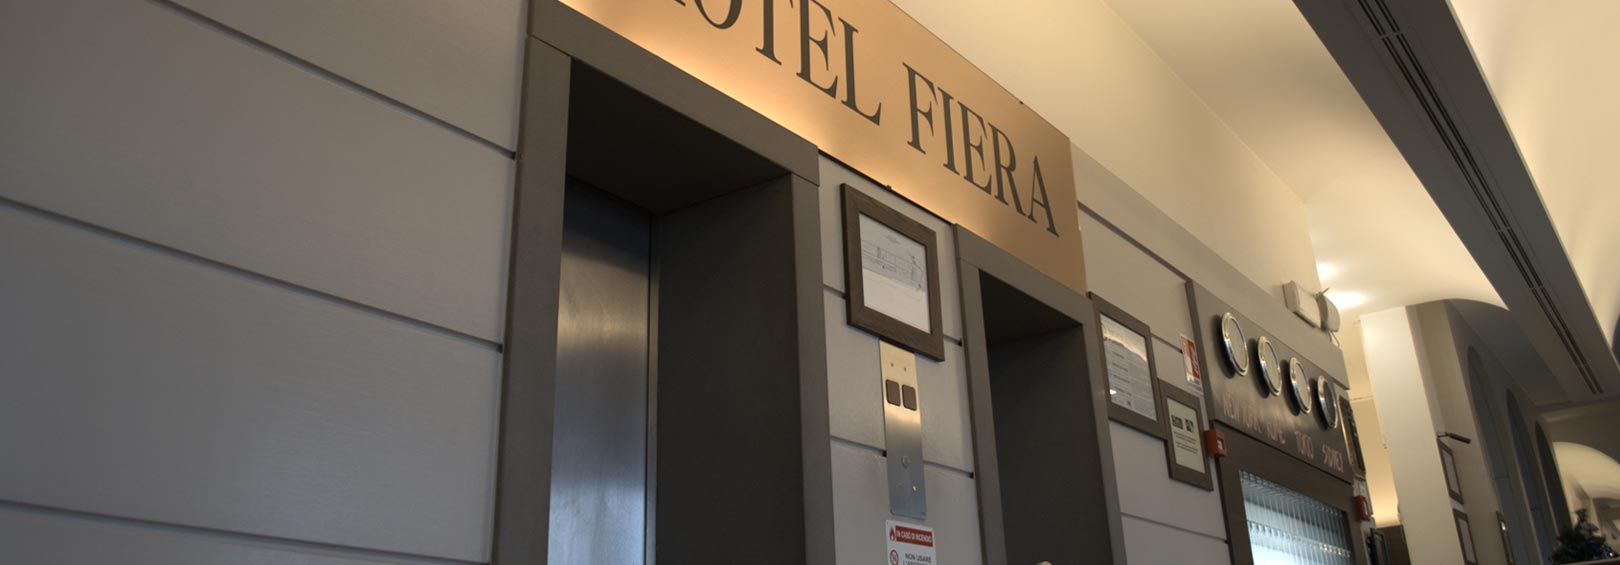 Hotel Fiera Bologna